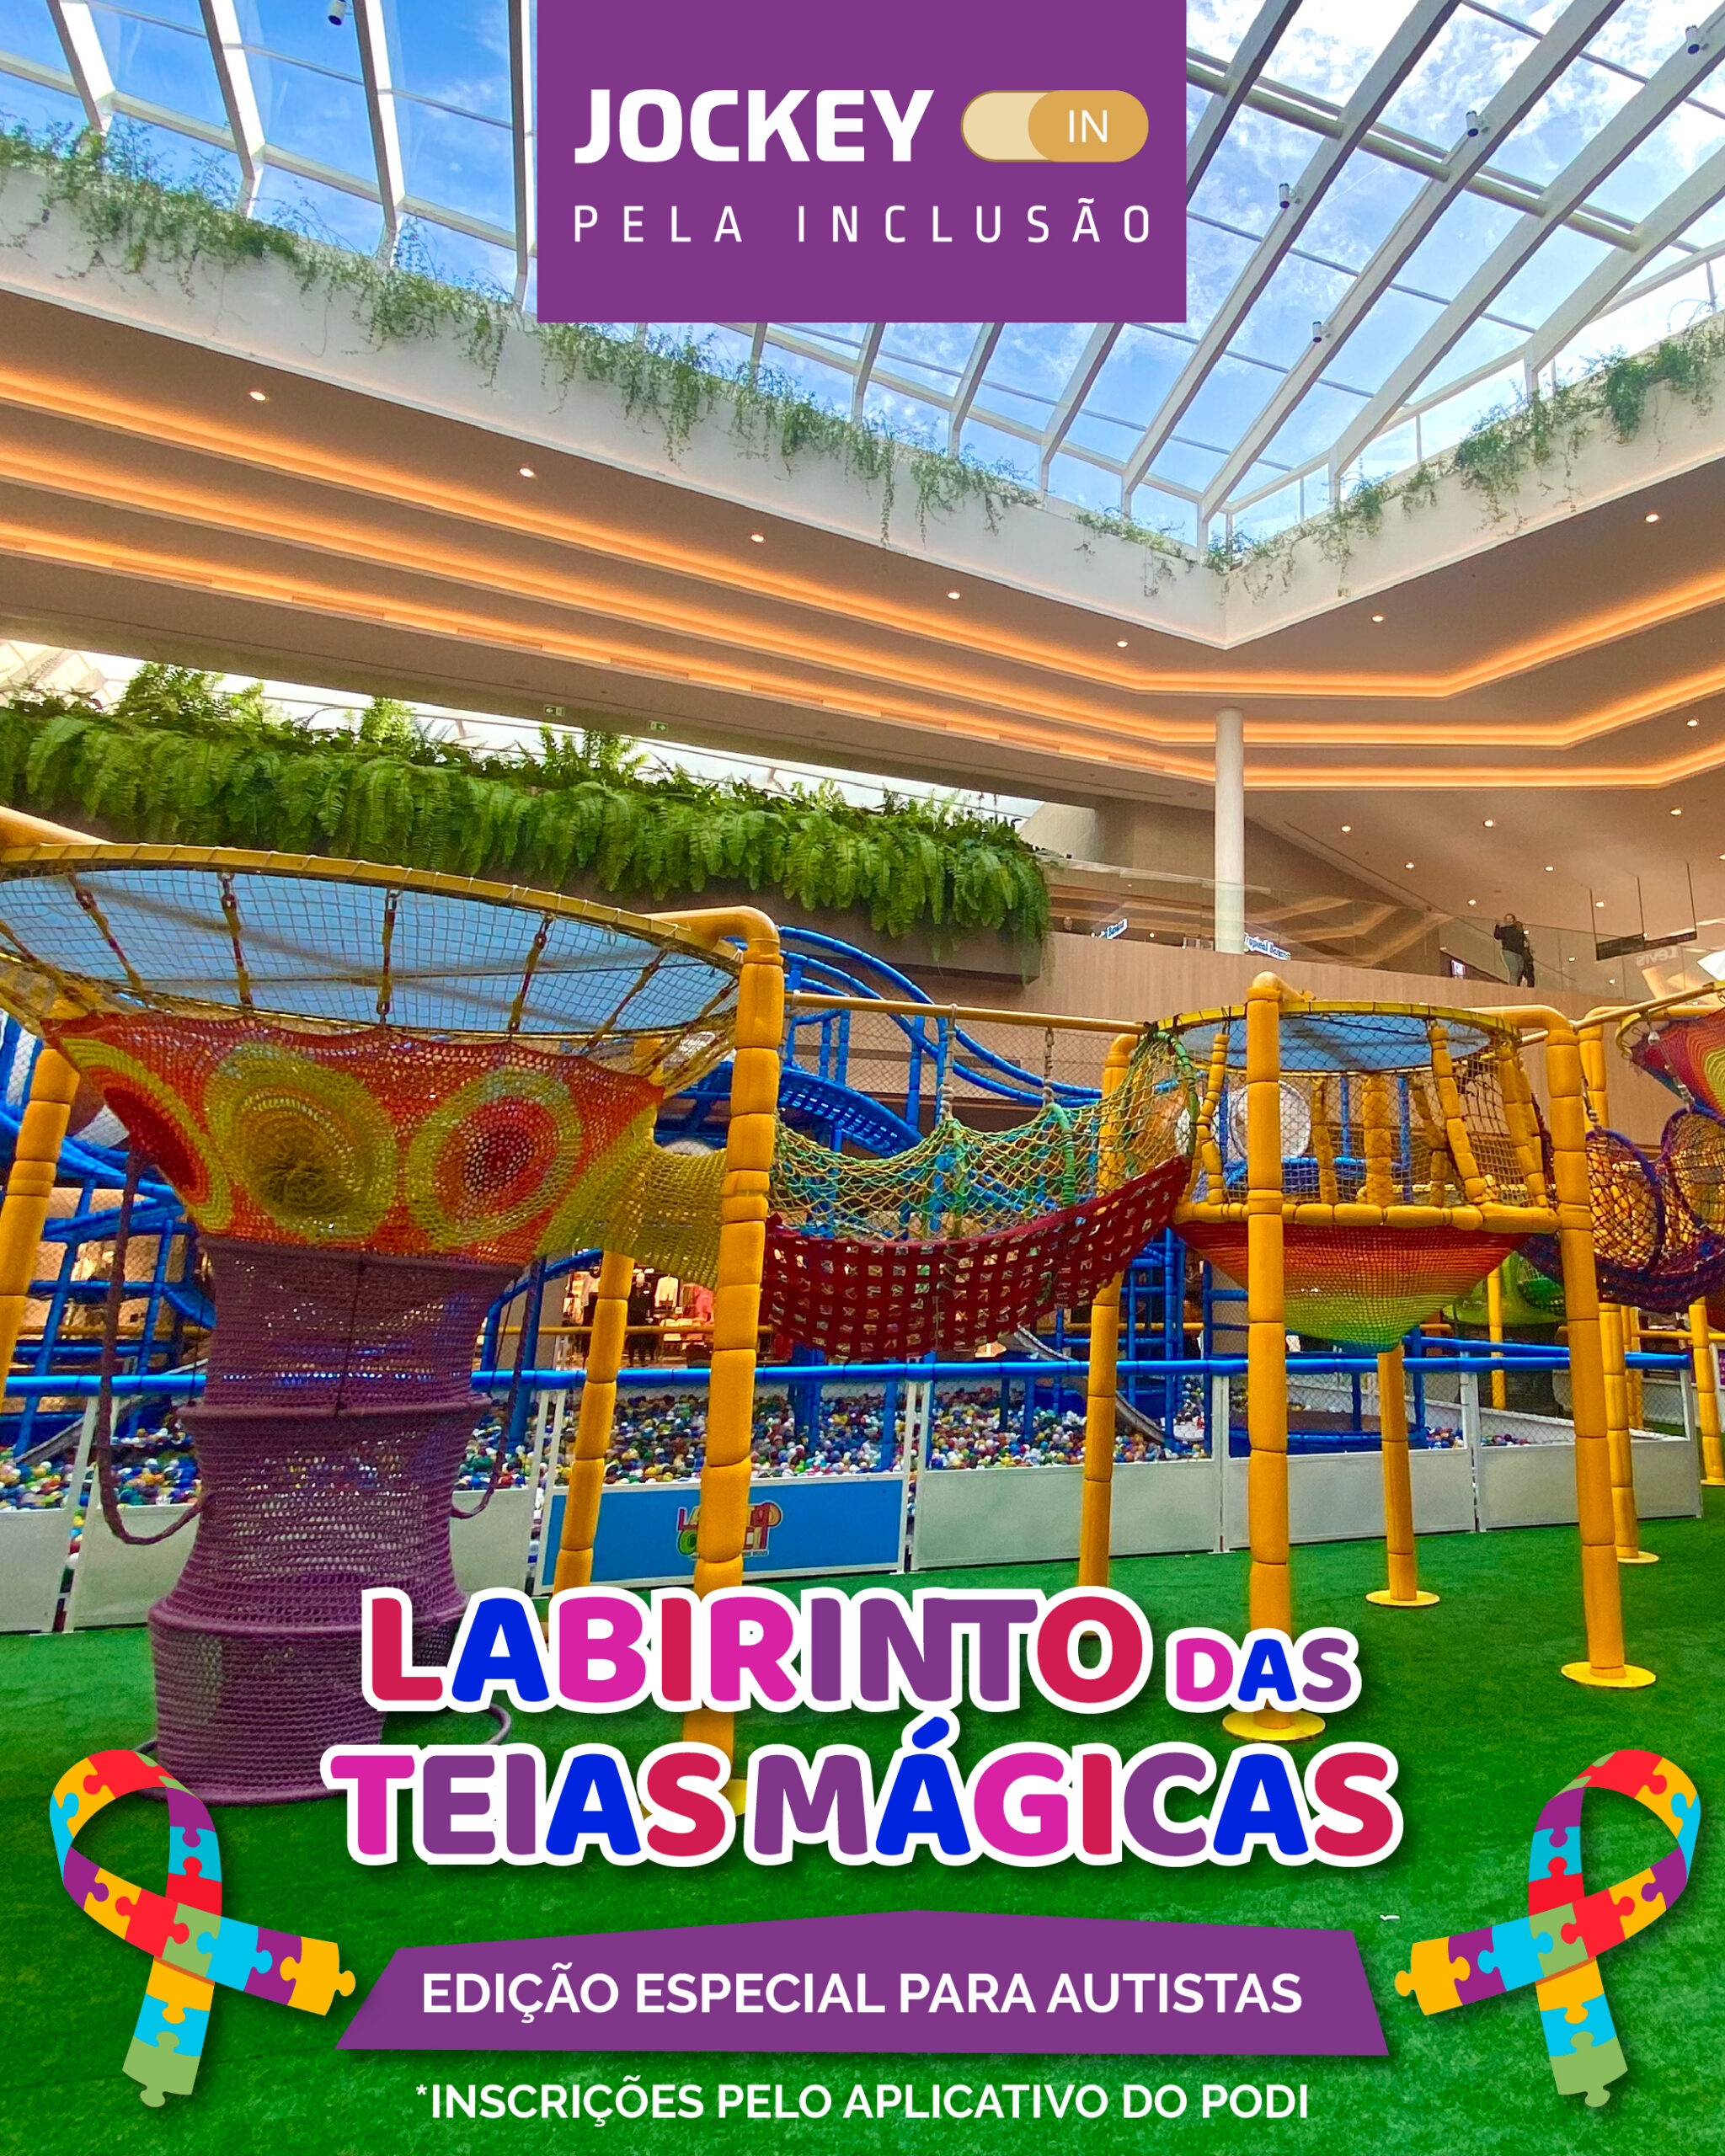 Jockey Plaza Shopping promove manhã inclusiva no Labirinto das Teias Mágicas